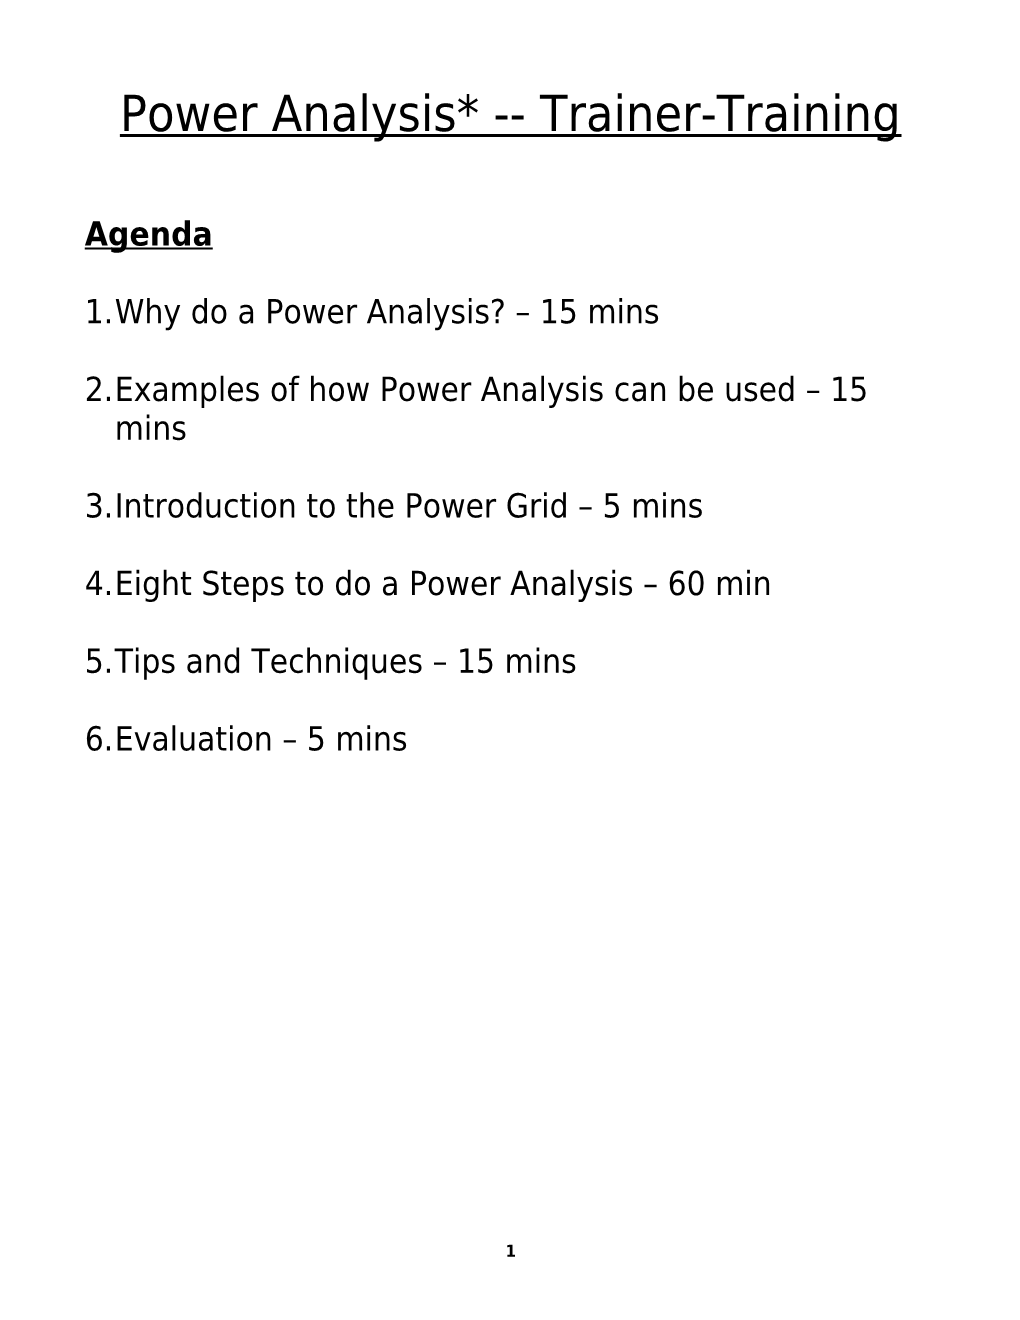 Power Analysis Curriculum, Facilitator Notes